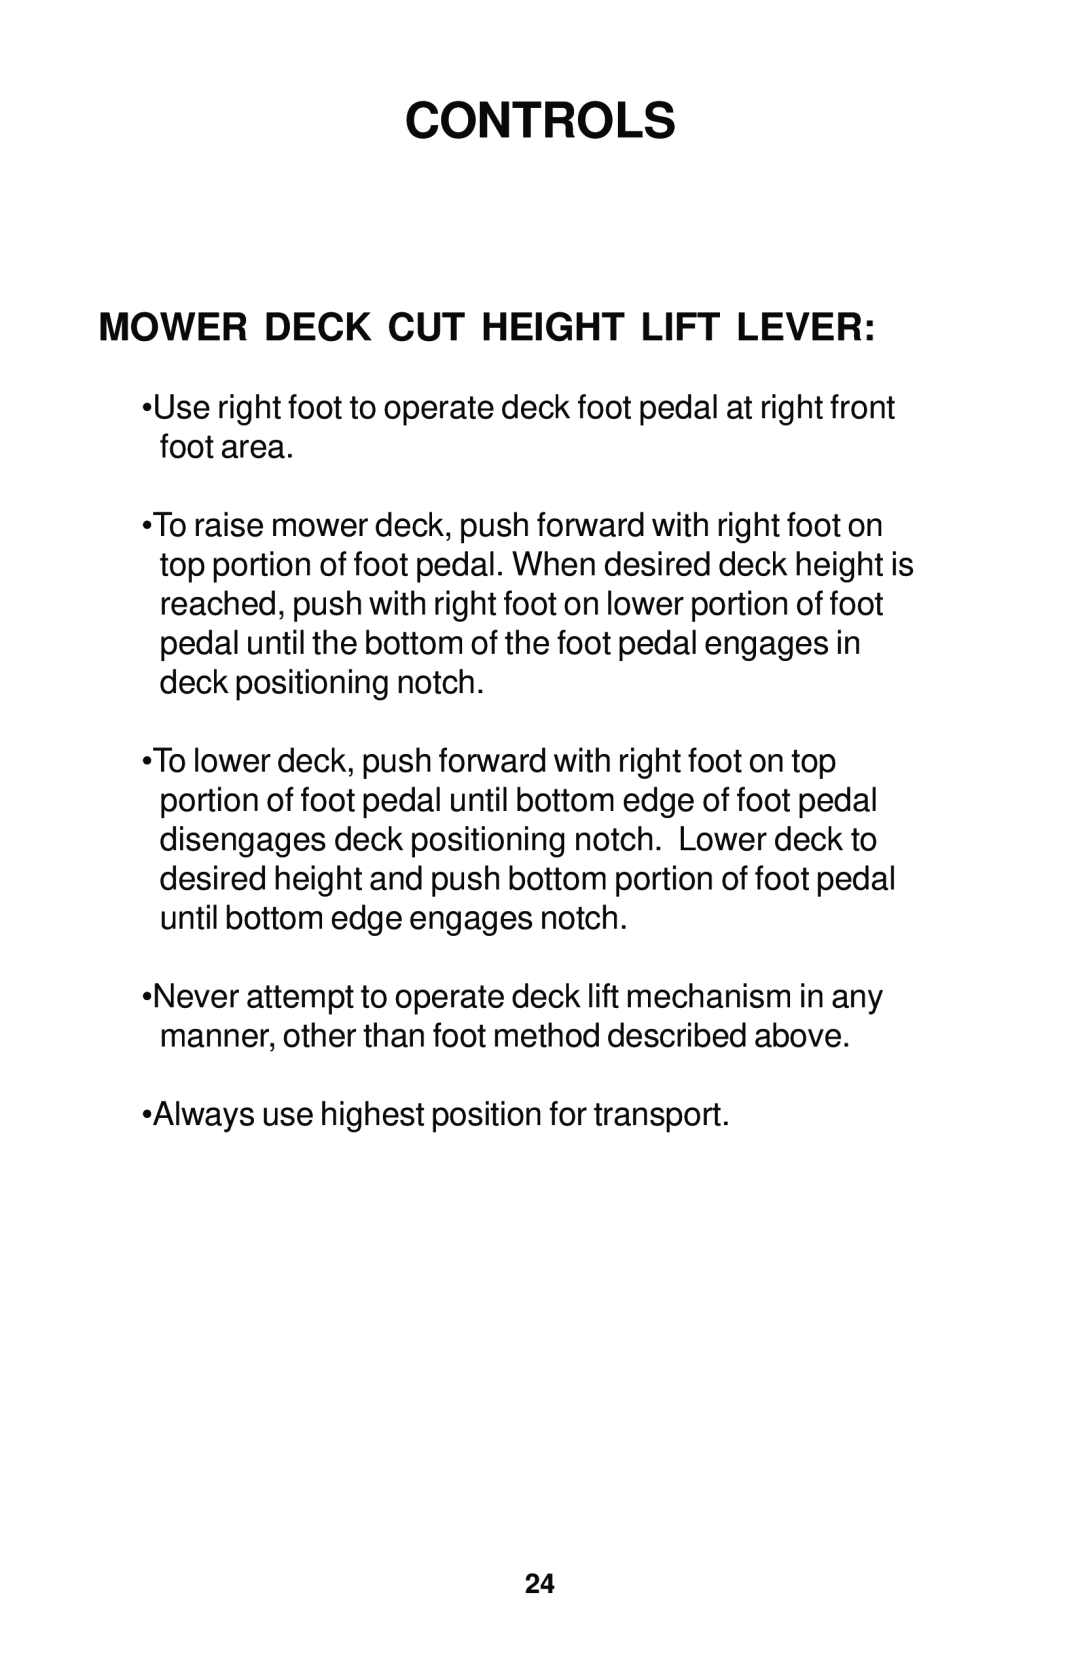 Dixon 42, 44, 50, 44 MAG, 50 MAG manual Mower Deck Cut Height Lift Lever, Controls 